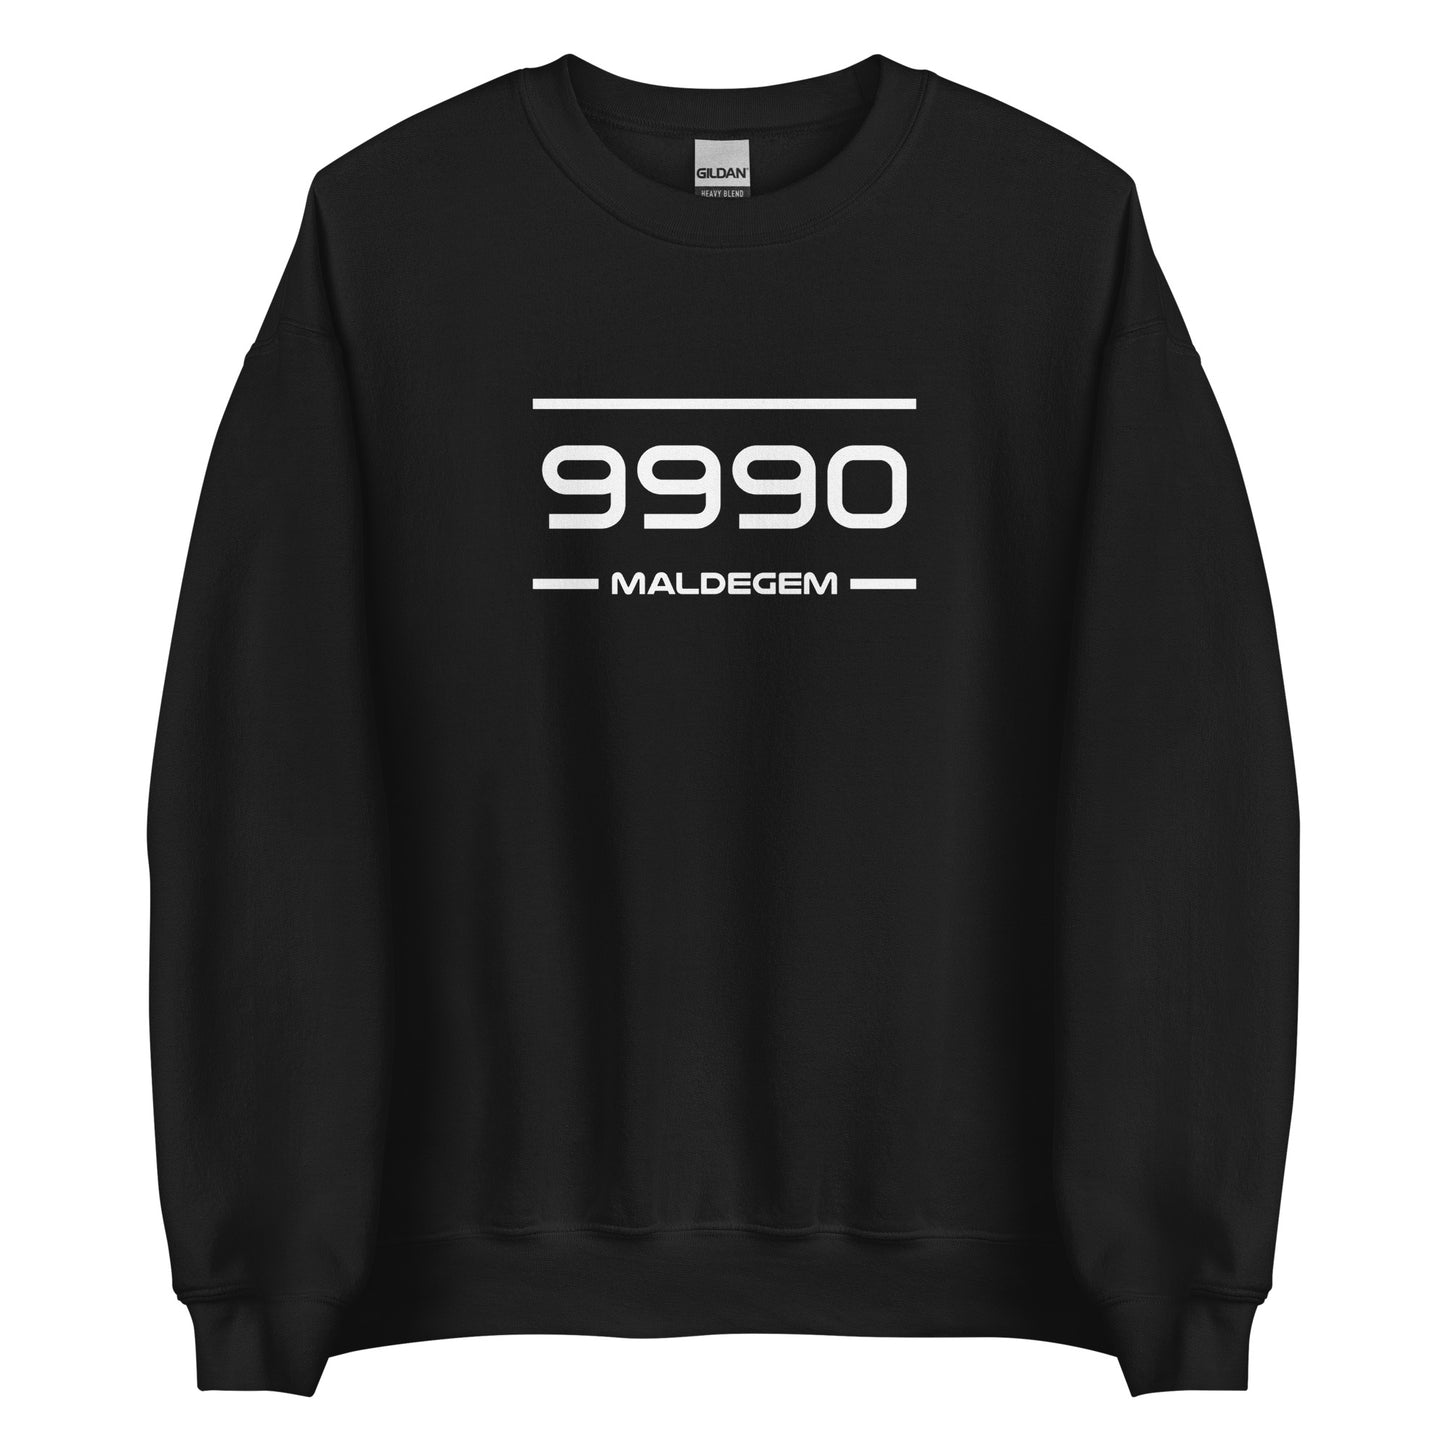 Sweater - 9990 - Maldegem (M/V)